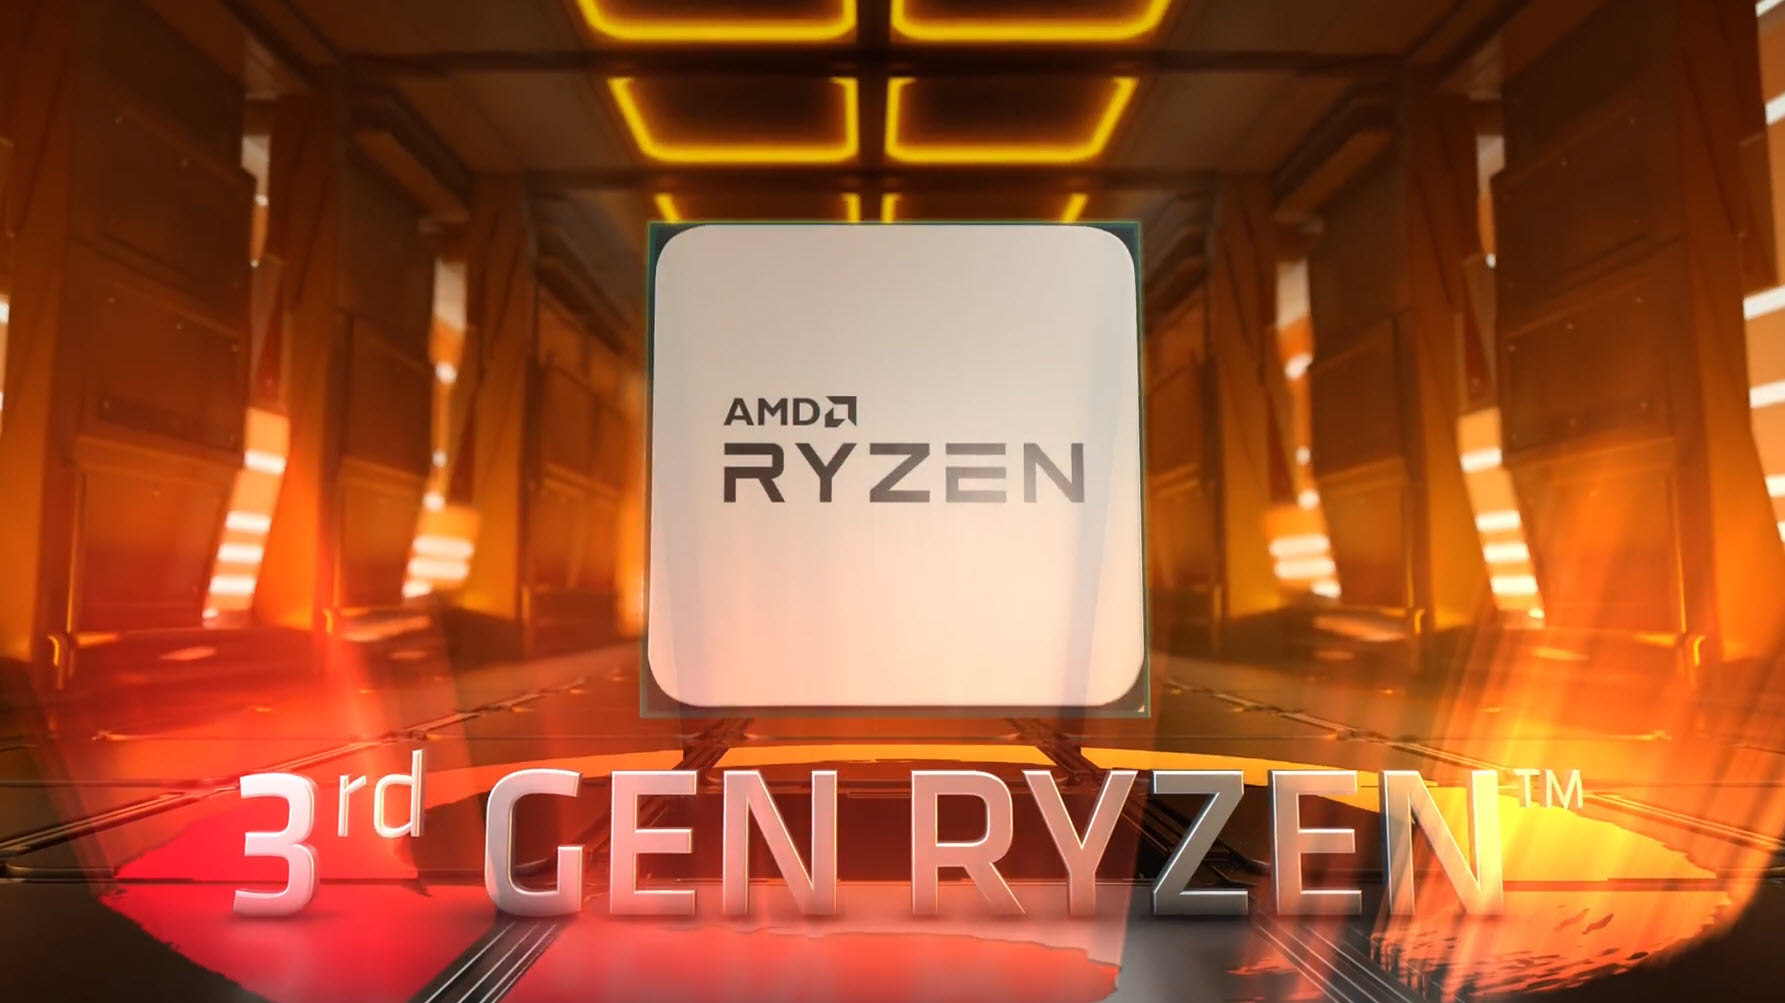 AMD เปิดตัวแพลตฟอร์มพีซีเกมมิ่งด้วยกราฟิกการ์ด AMD Radeon™ RX 5700 Series และชิปประมวลผล AMD Ryzen™ 3000 Series พร้อมวางจำหน่ายแล้วทั่วโลก